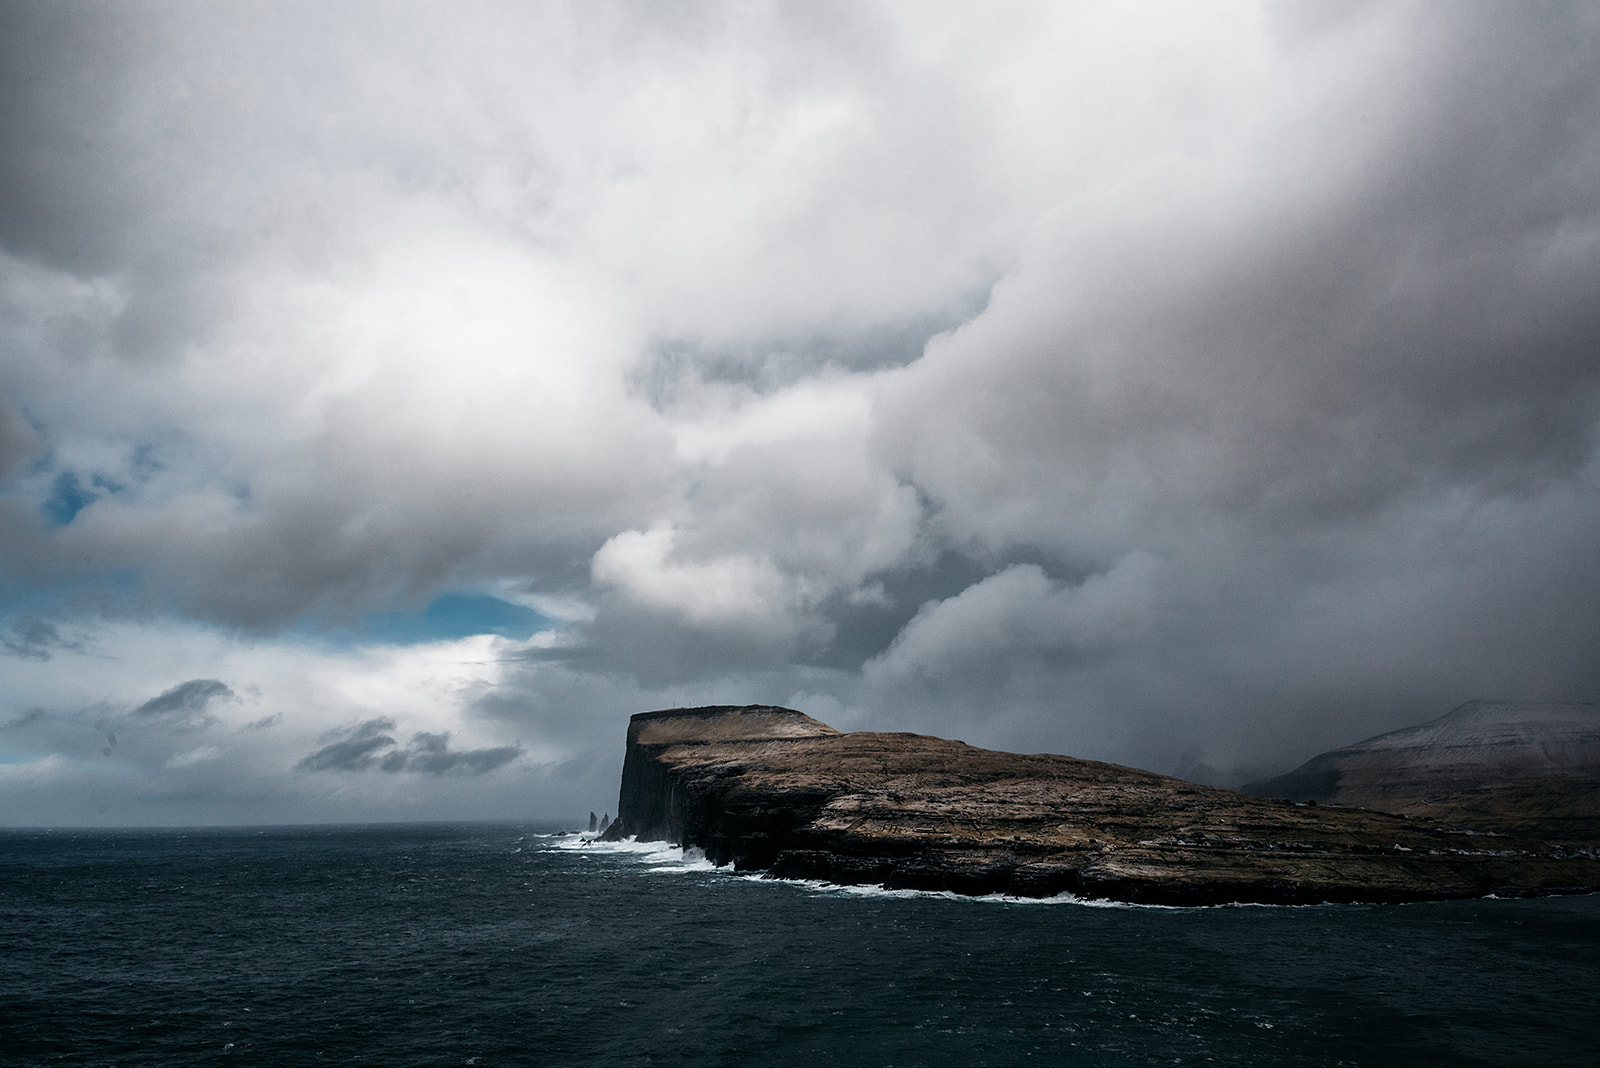 Iconic cliff against rough sea